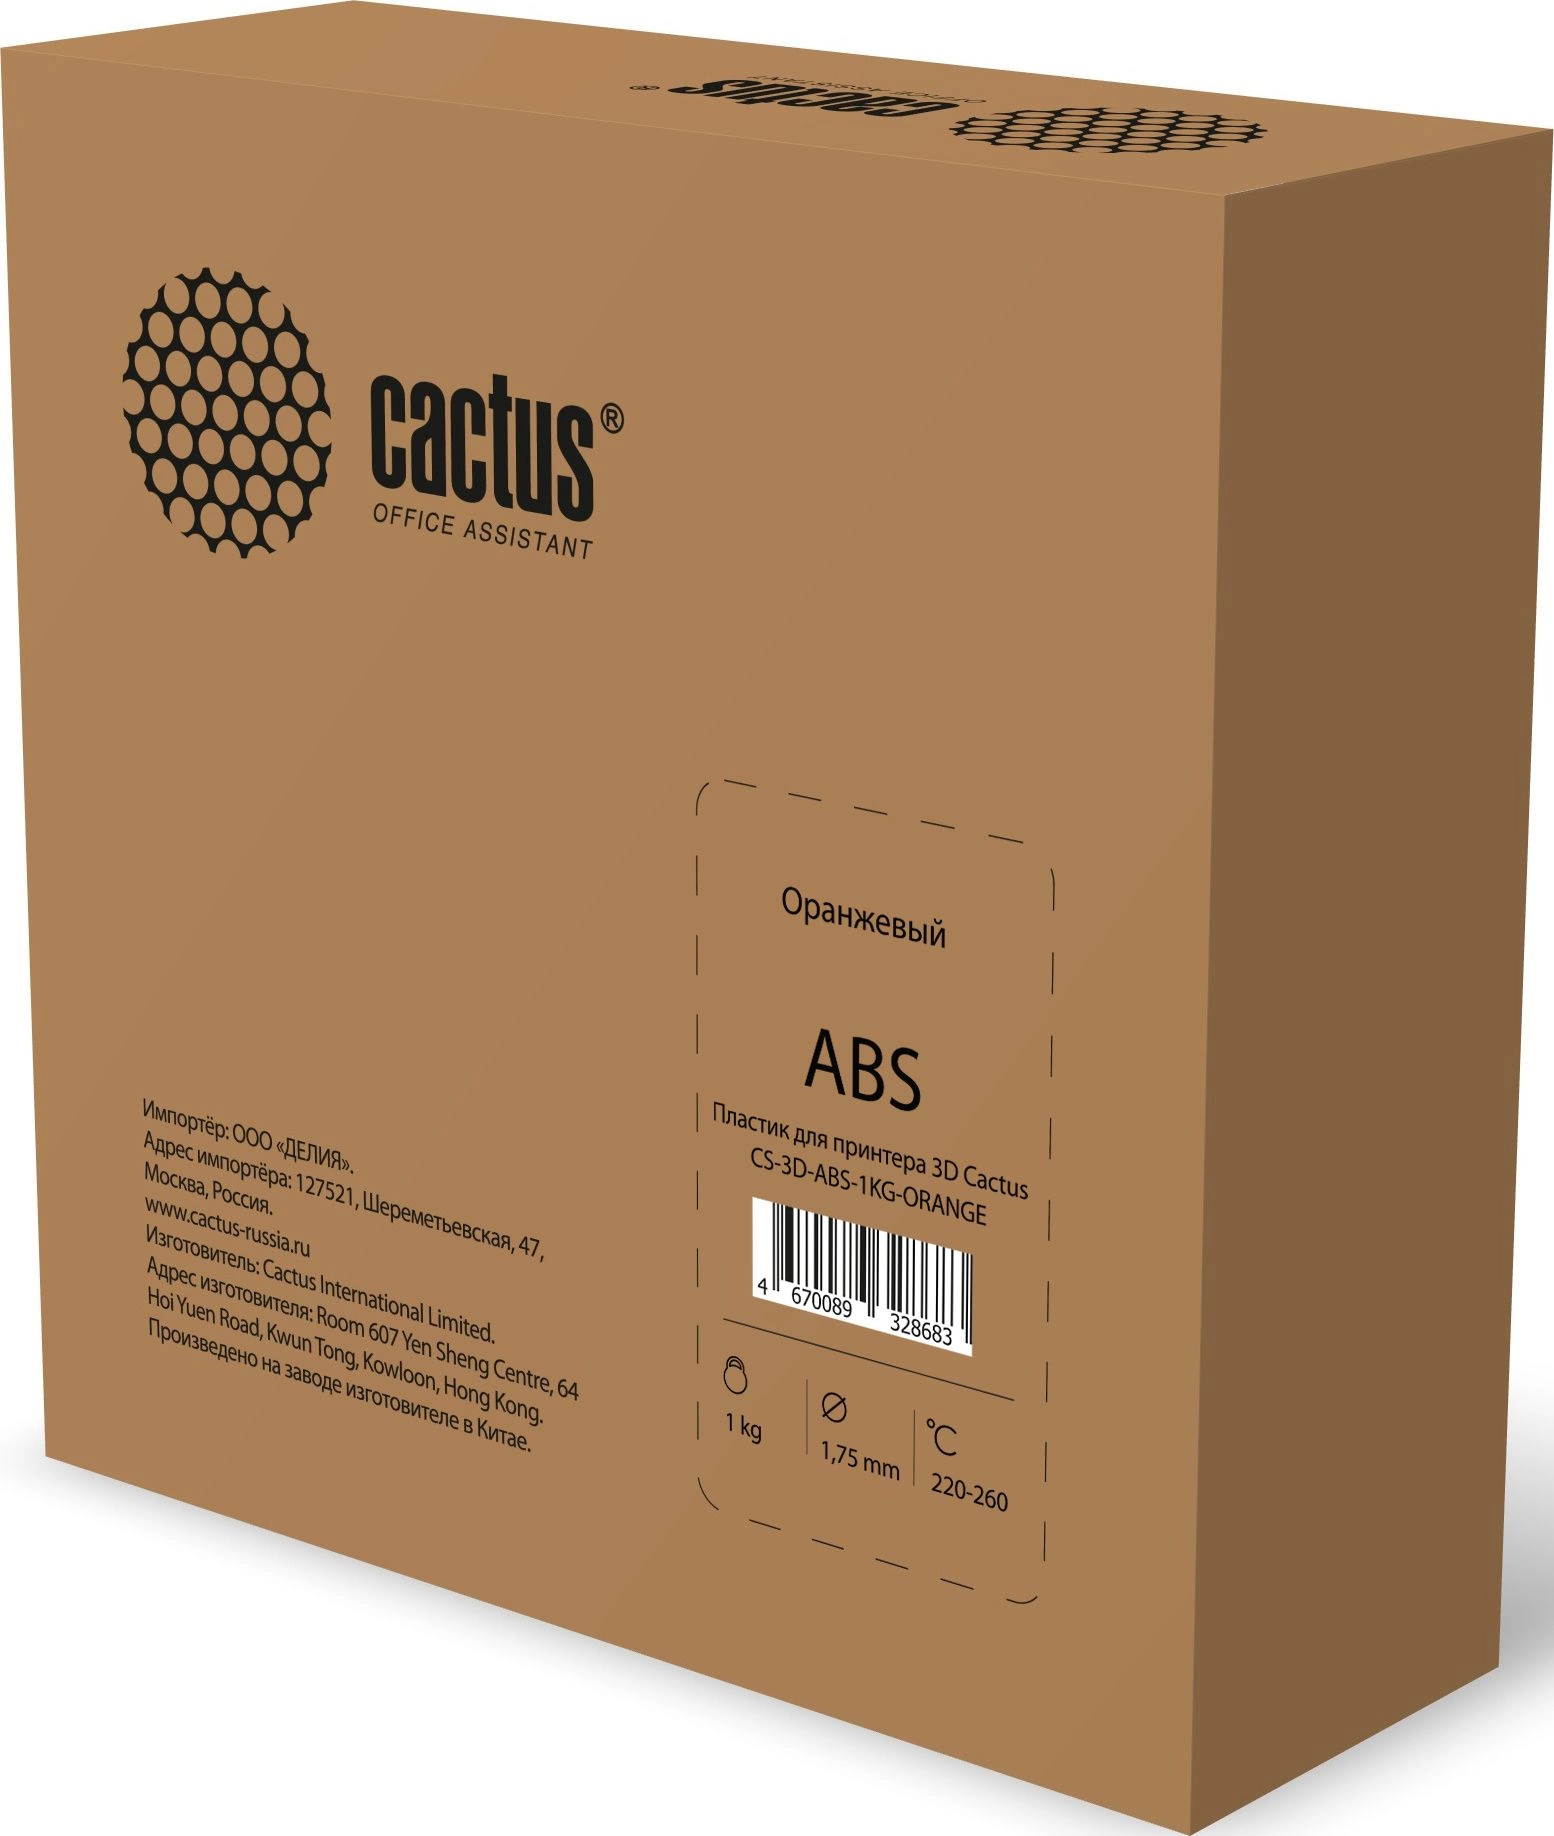 Пластик для принтера 3D Cactus CS-3D-ABS-1KG-ORANGE ABS d1.75мм 1кг 1цв.